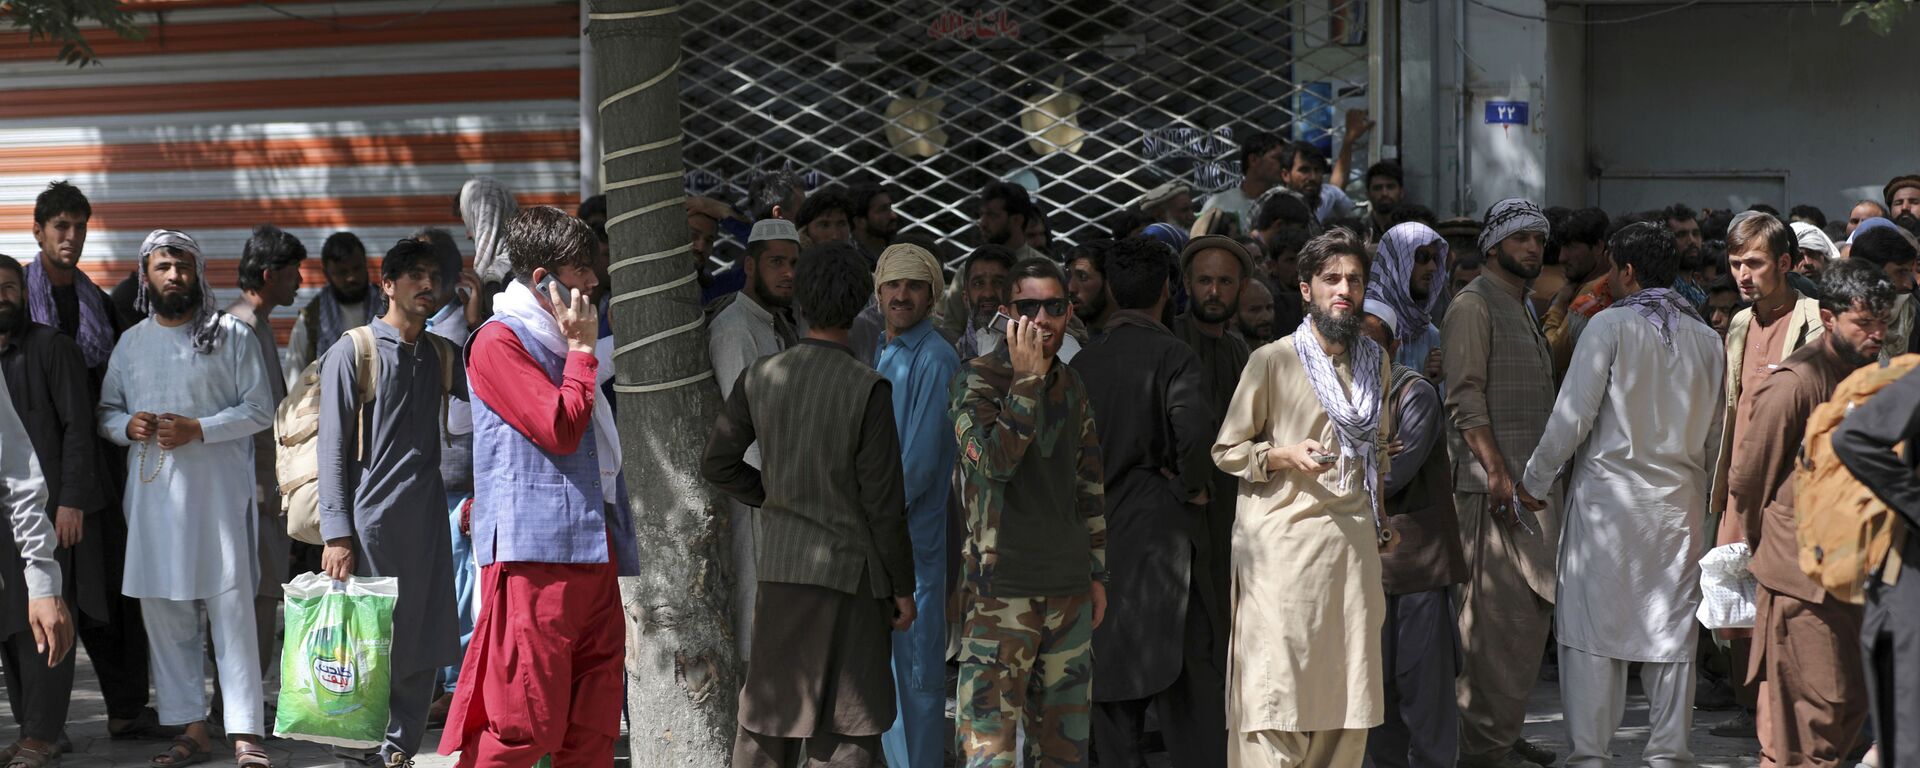 Афганцы в очереди в банк в Кабуле  - Sputnik Mundo, 1920, 17.08.2021